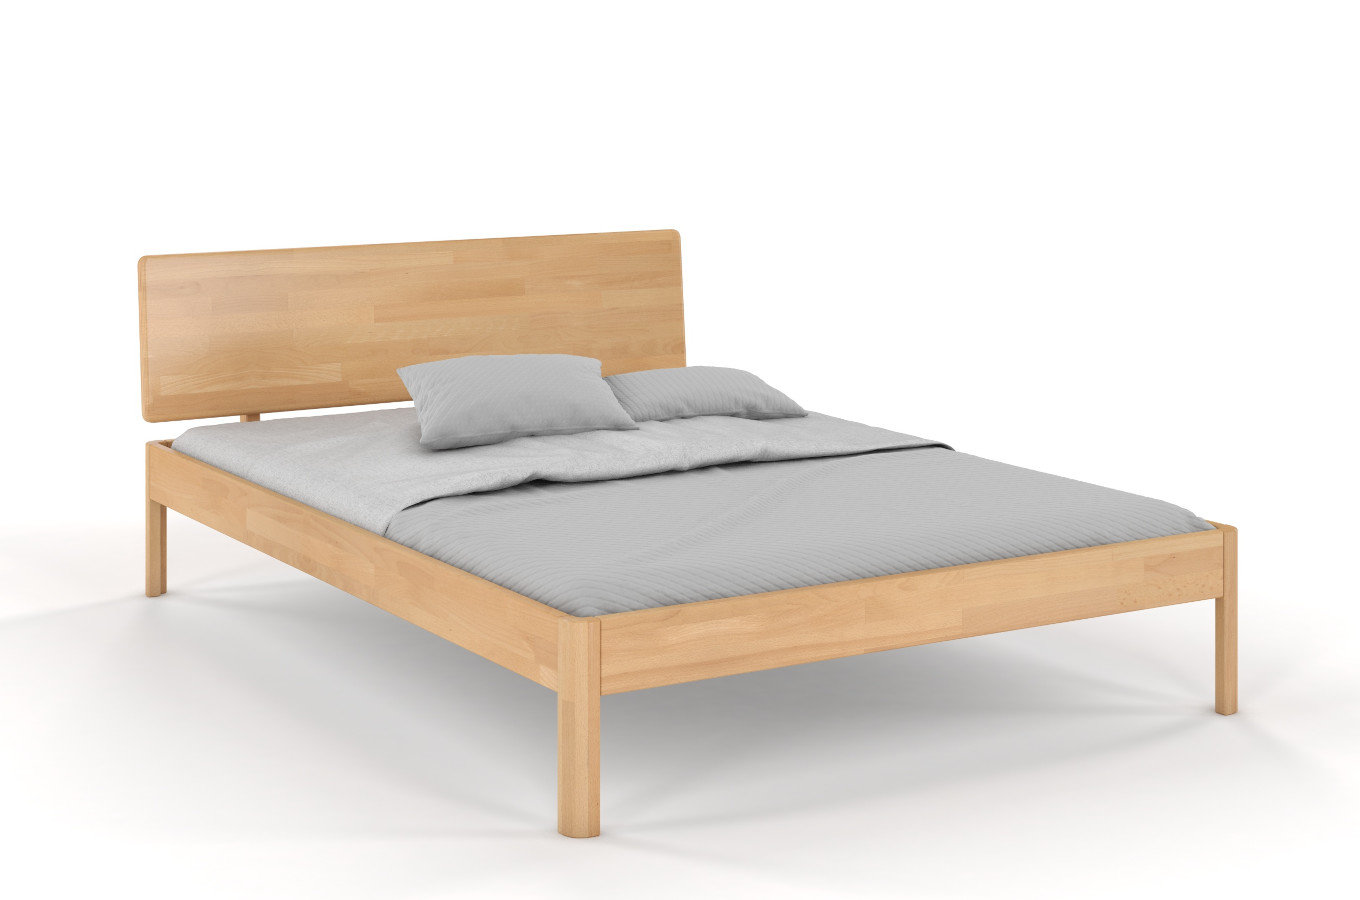 Łóżko drewniane bukowe Visby AMMER / 180x200 cm, kolor naturalny